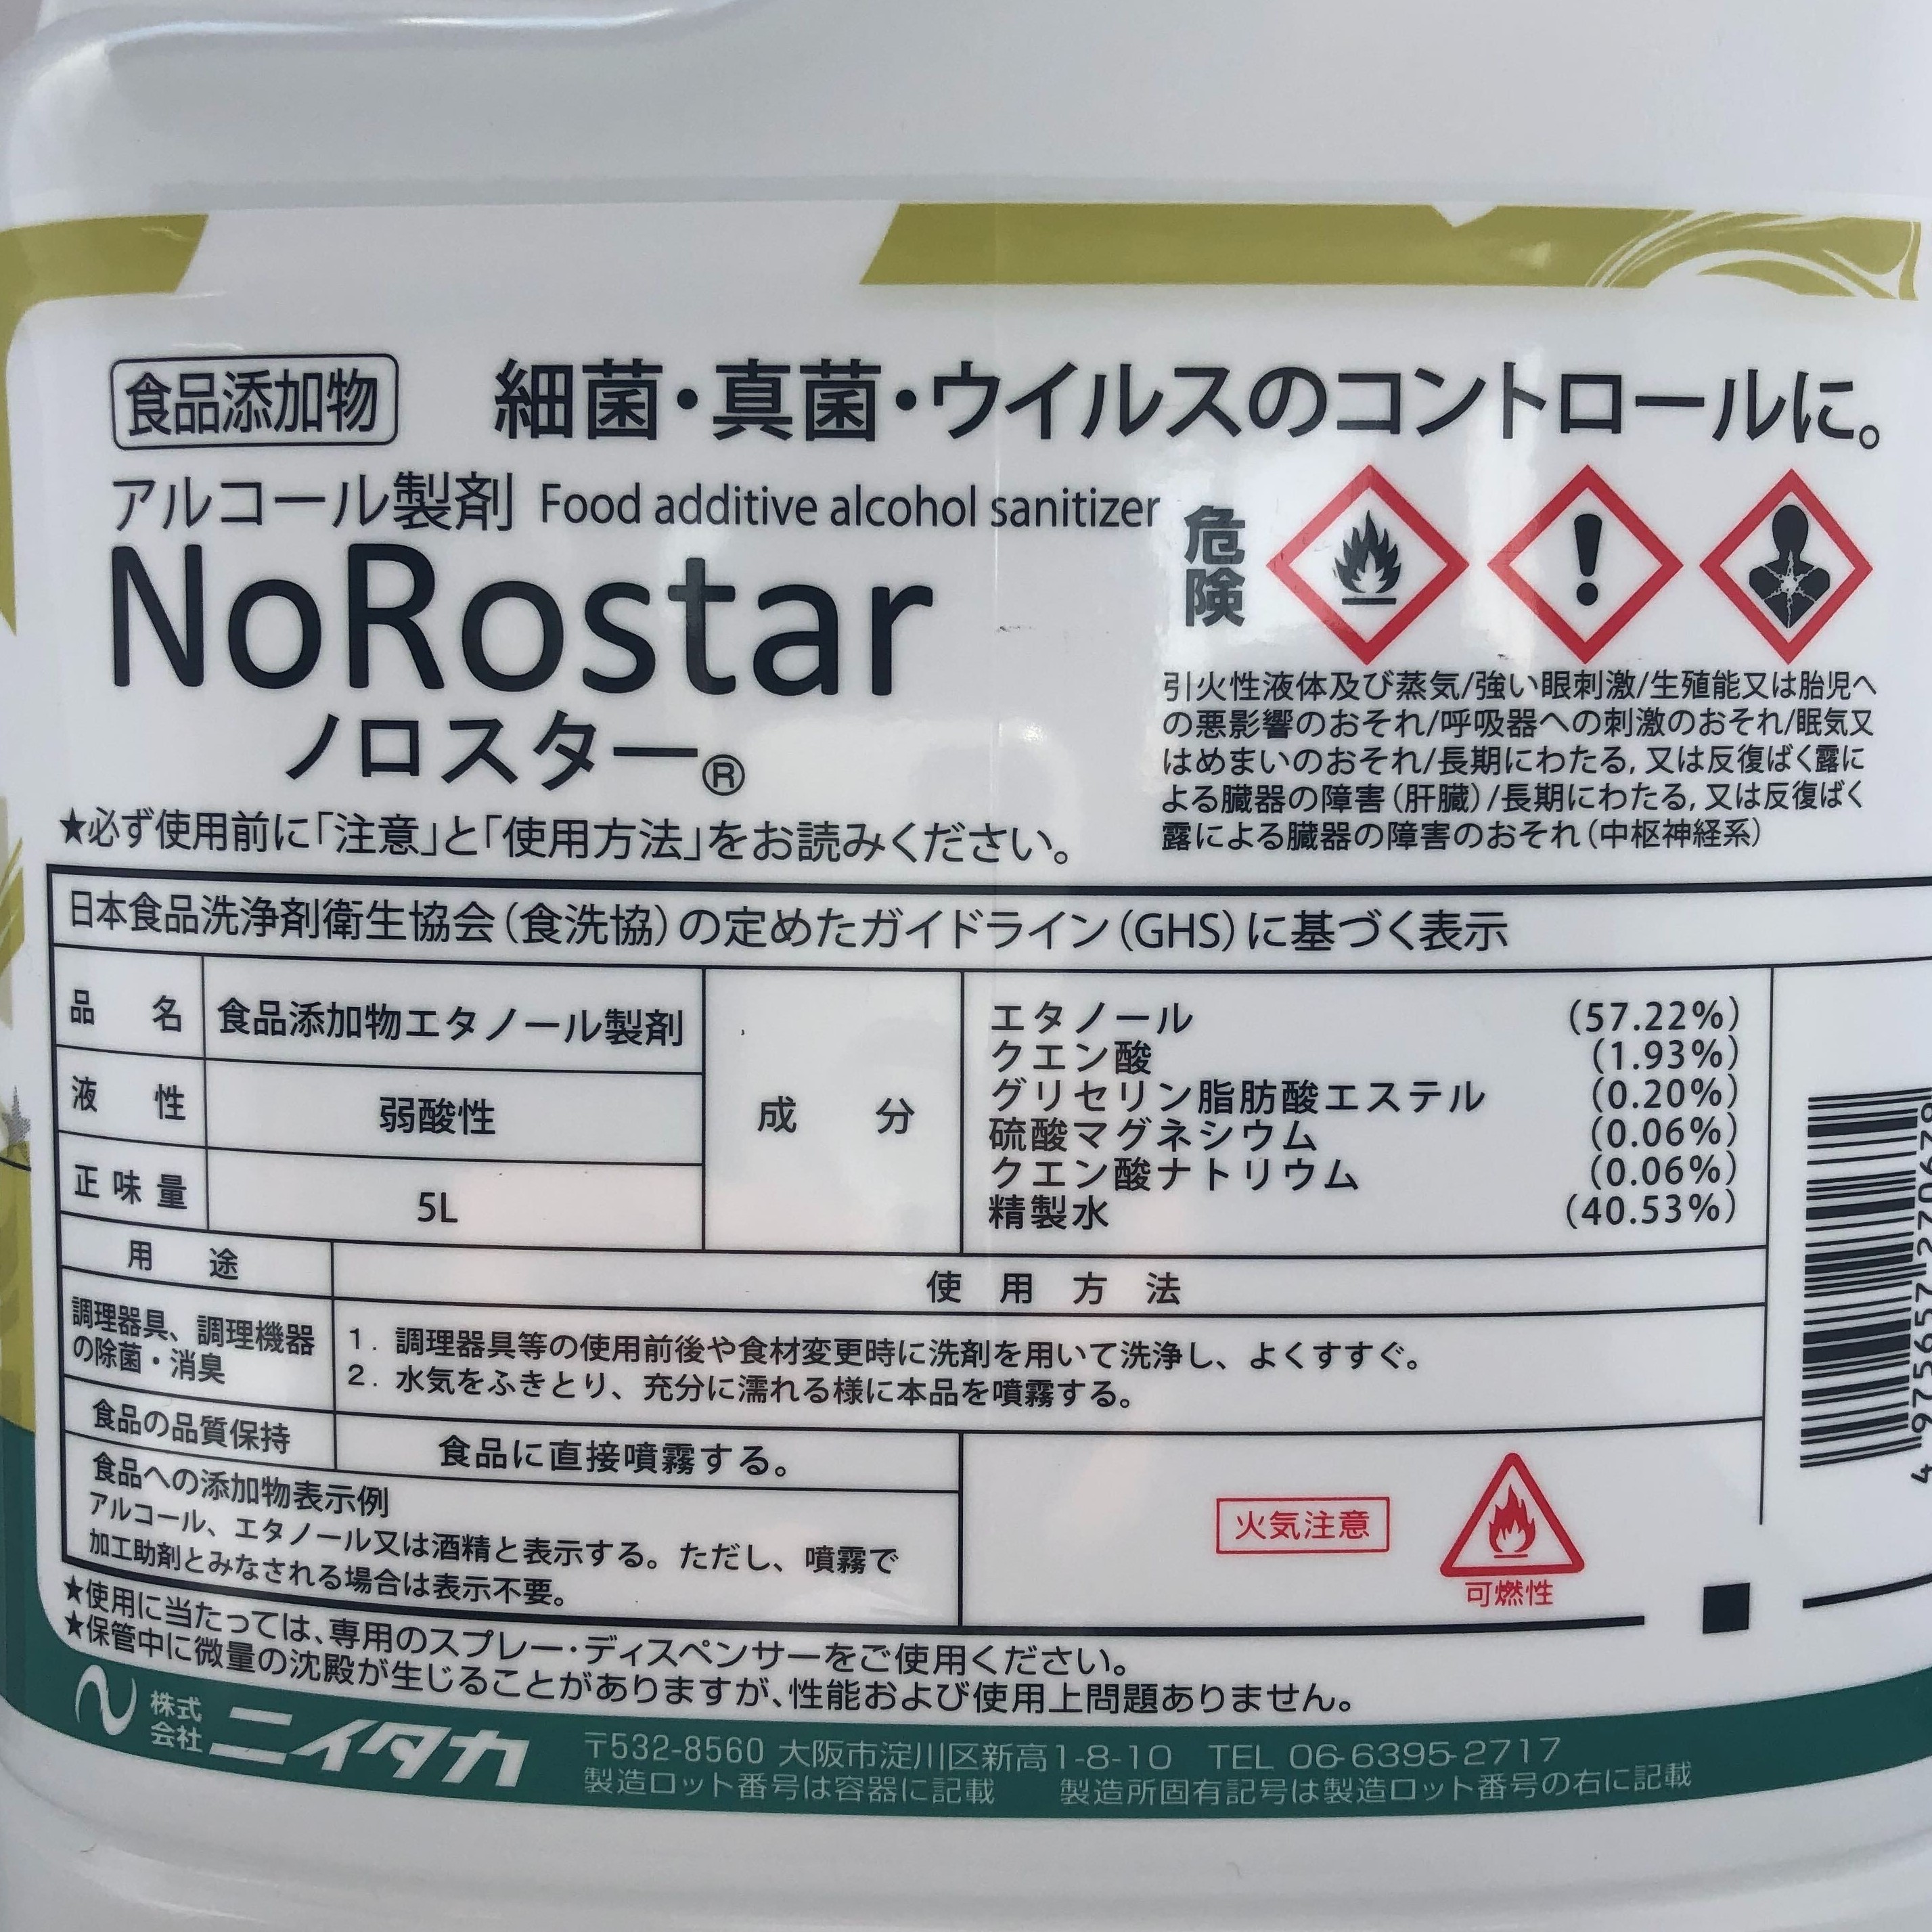 ノロスター【食品添加物エタノール製剤】 | ニイタカ / 5L | 【業務用 